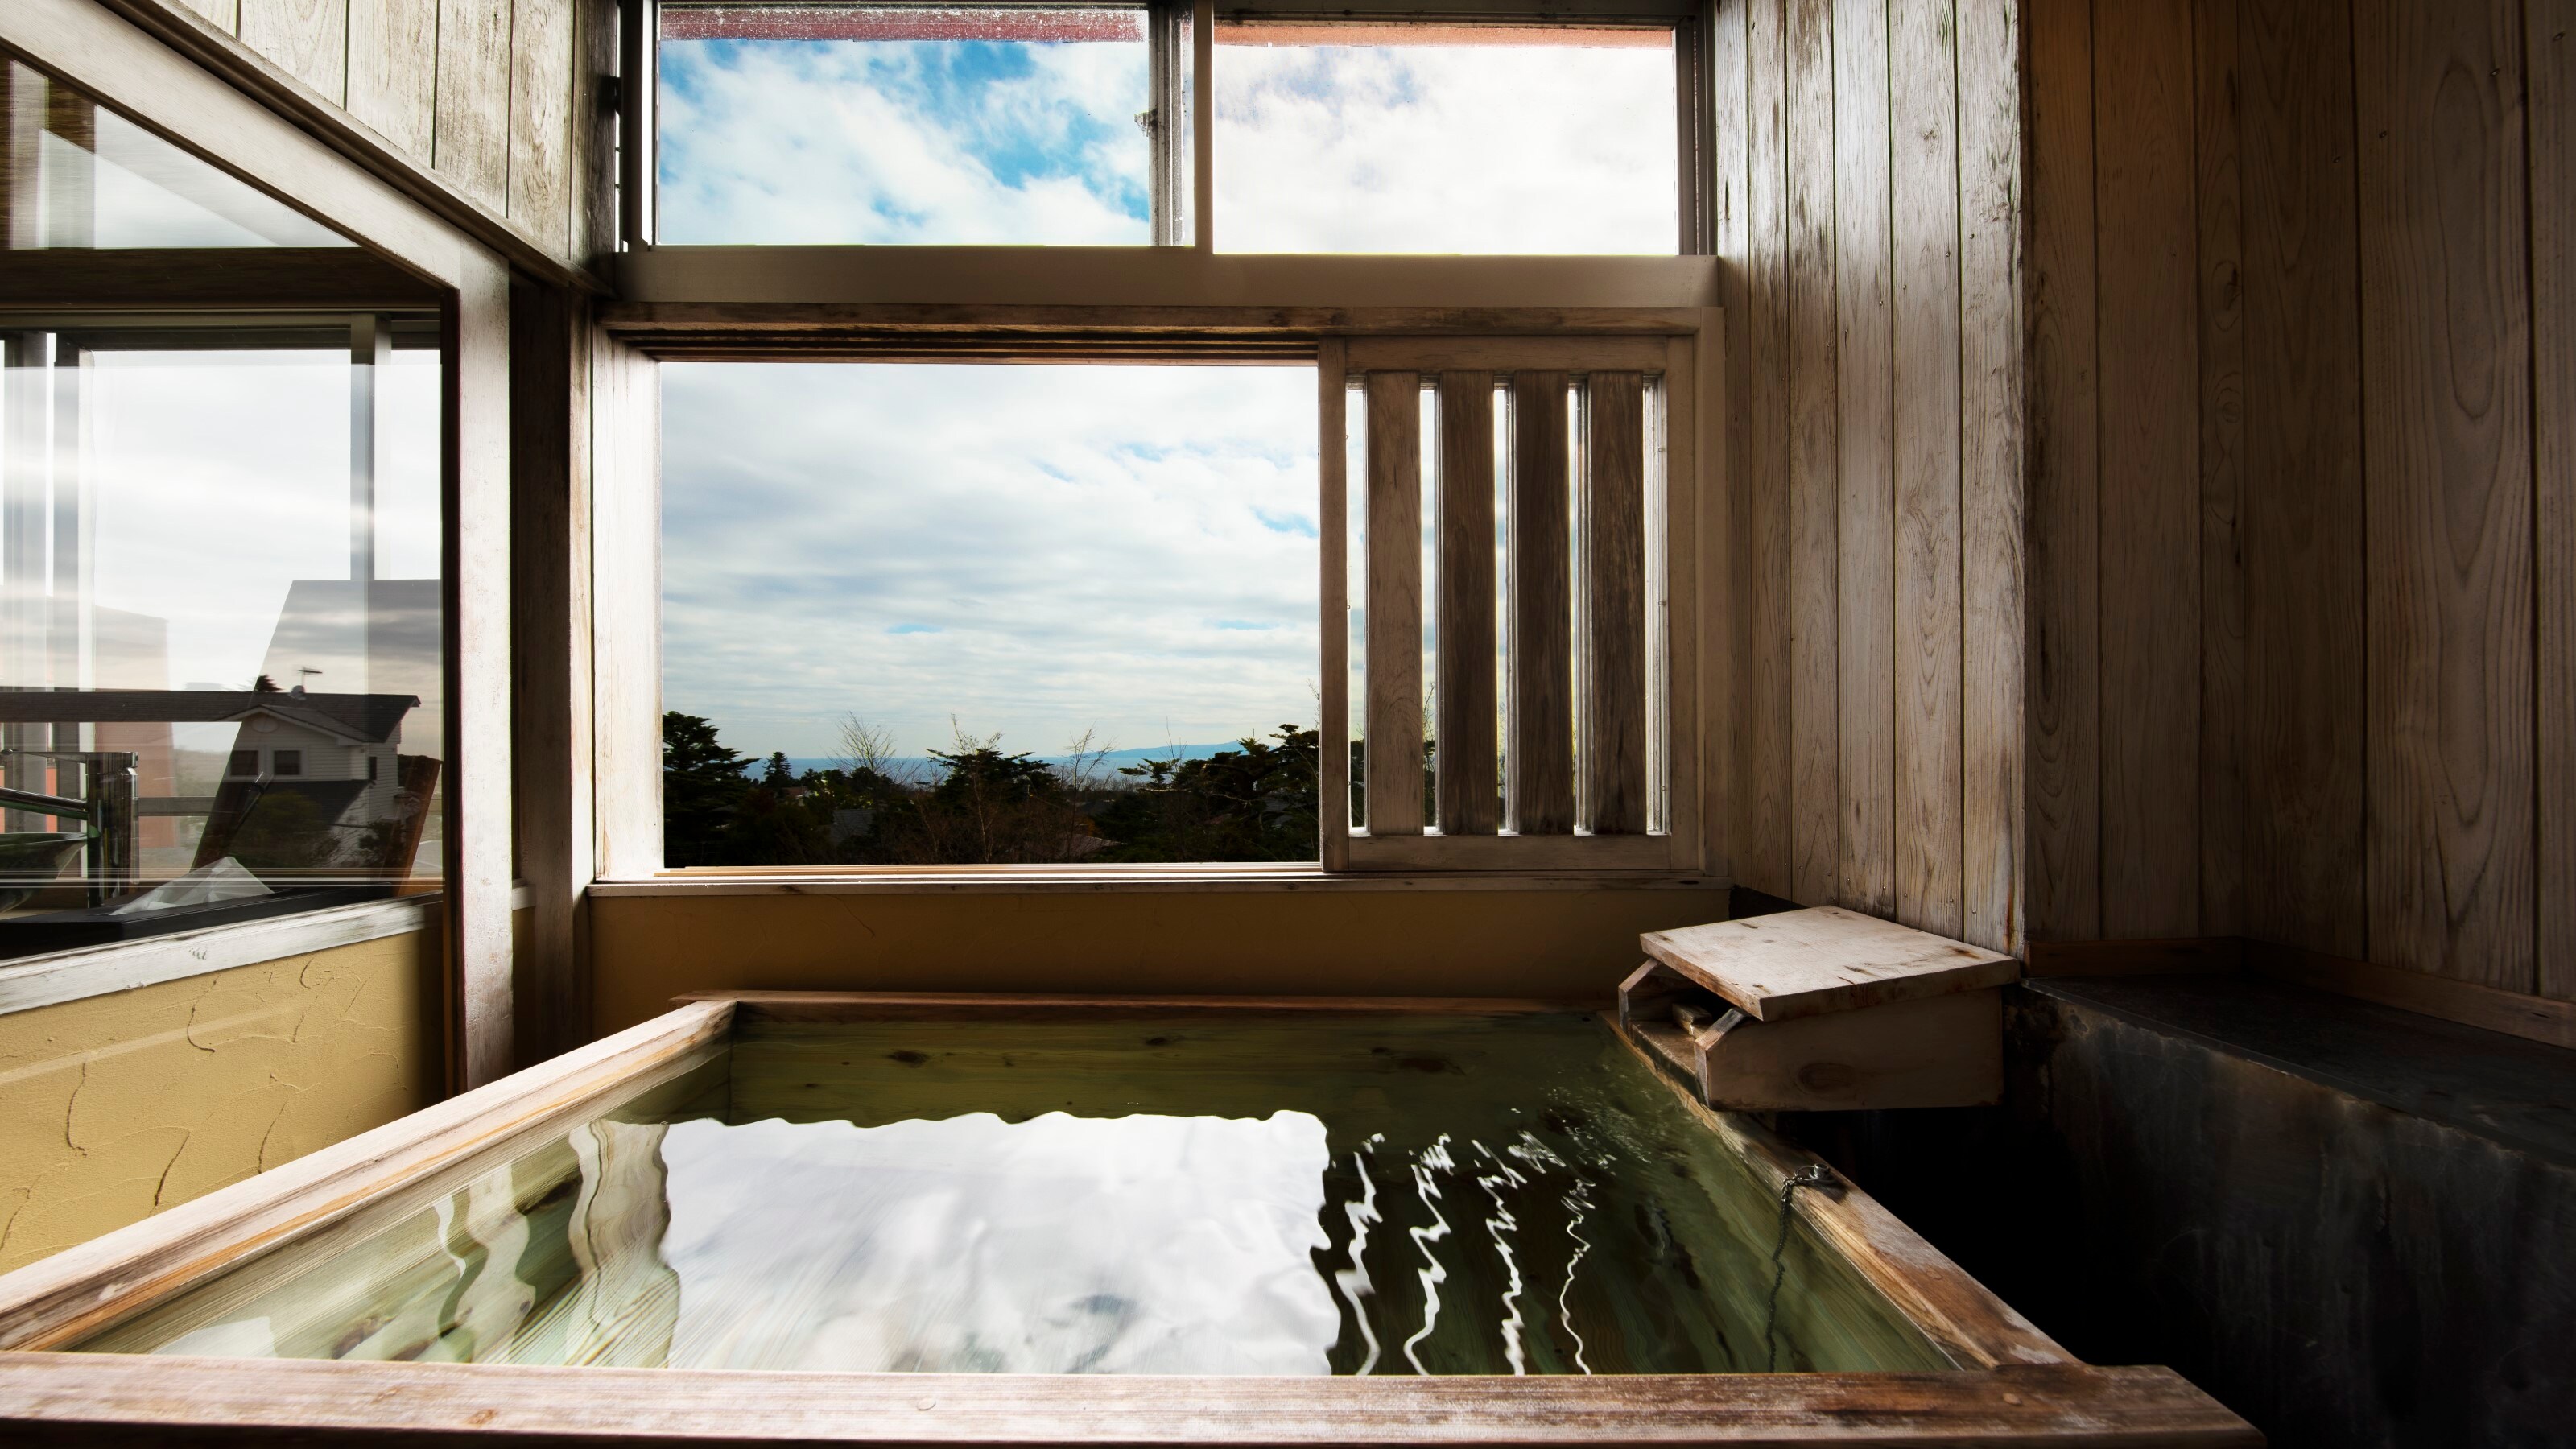 ห้องสไตล์ญี่ปุ่น 8 เสื่อทาทามิ ห้องสูบบุหรี่พร้อมที่อาบน้ำกลางแจ้ง Kano